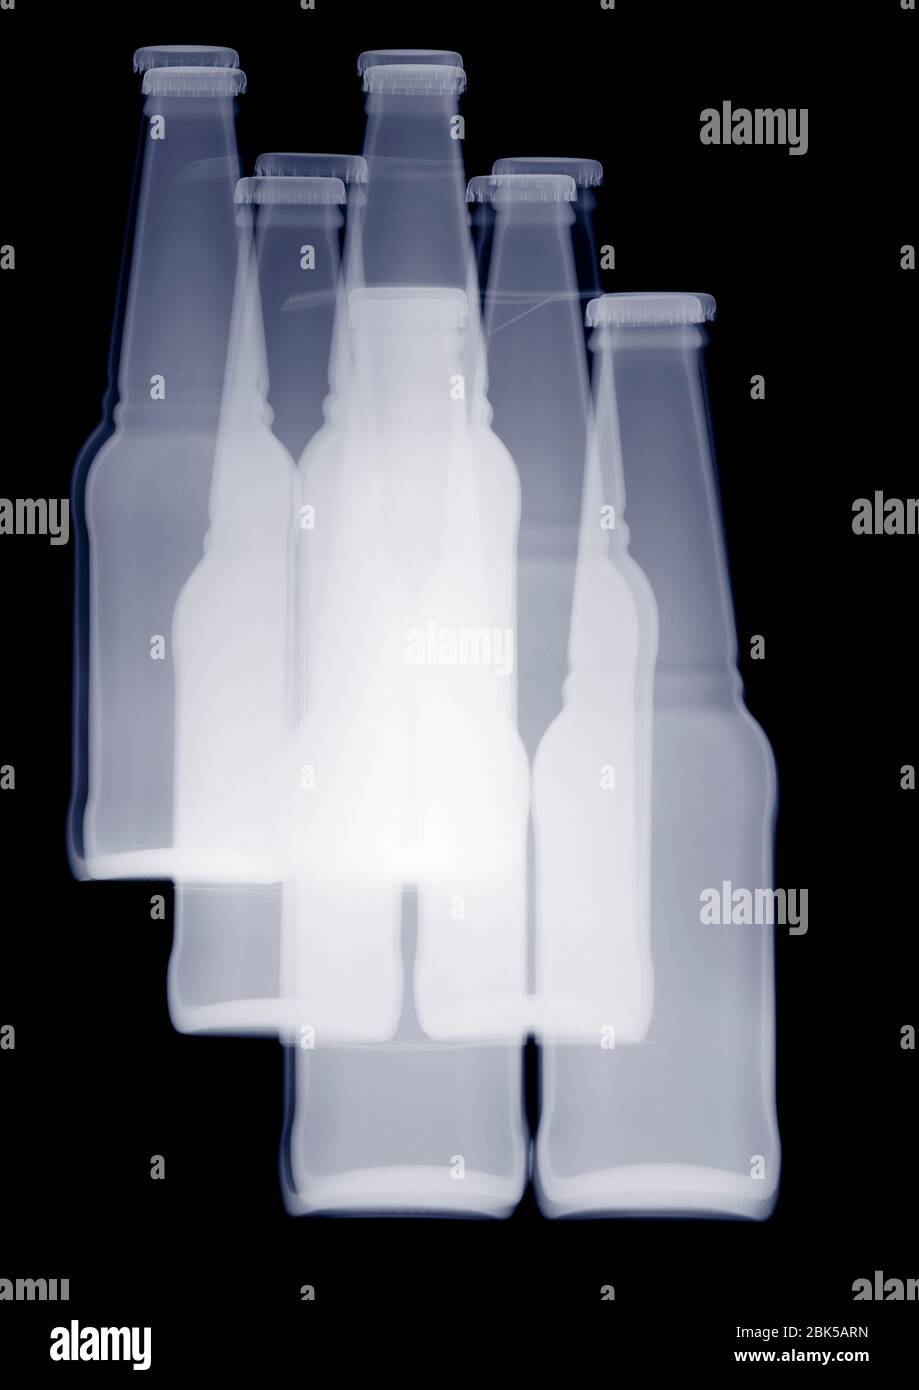 Montage de bouteilles de boisson, rayons X. Banque D'Images